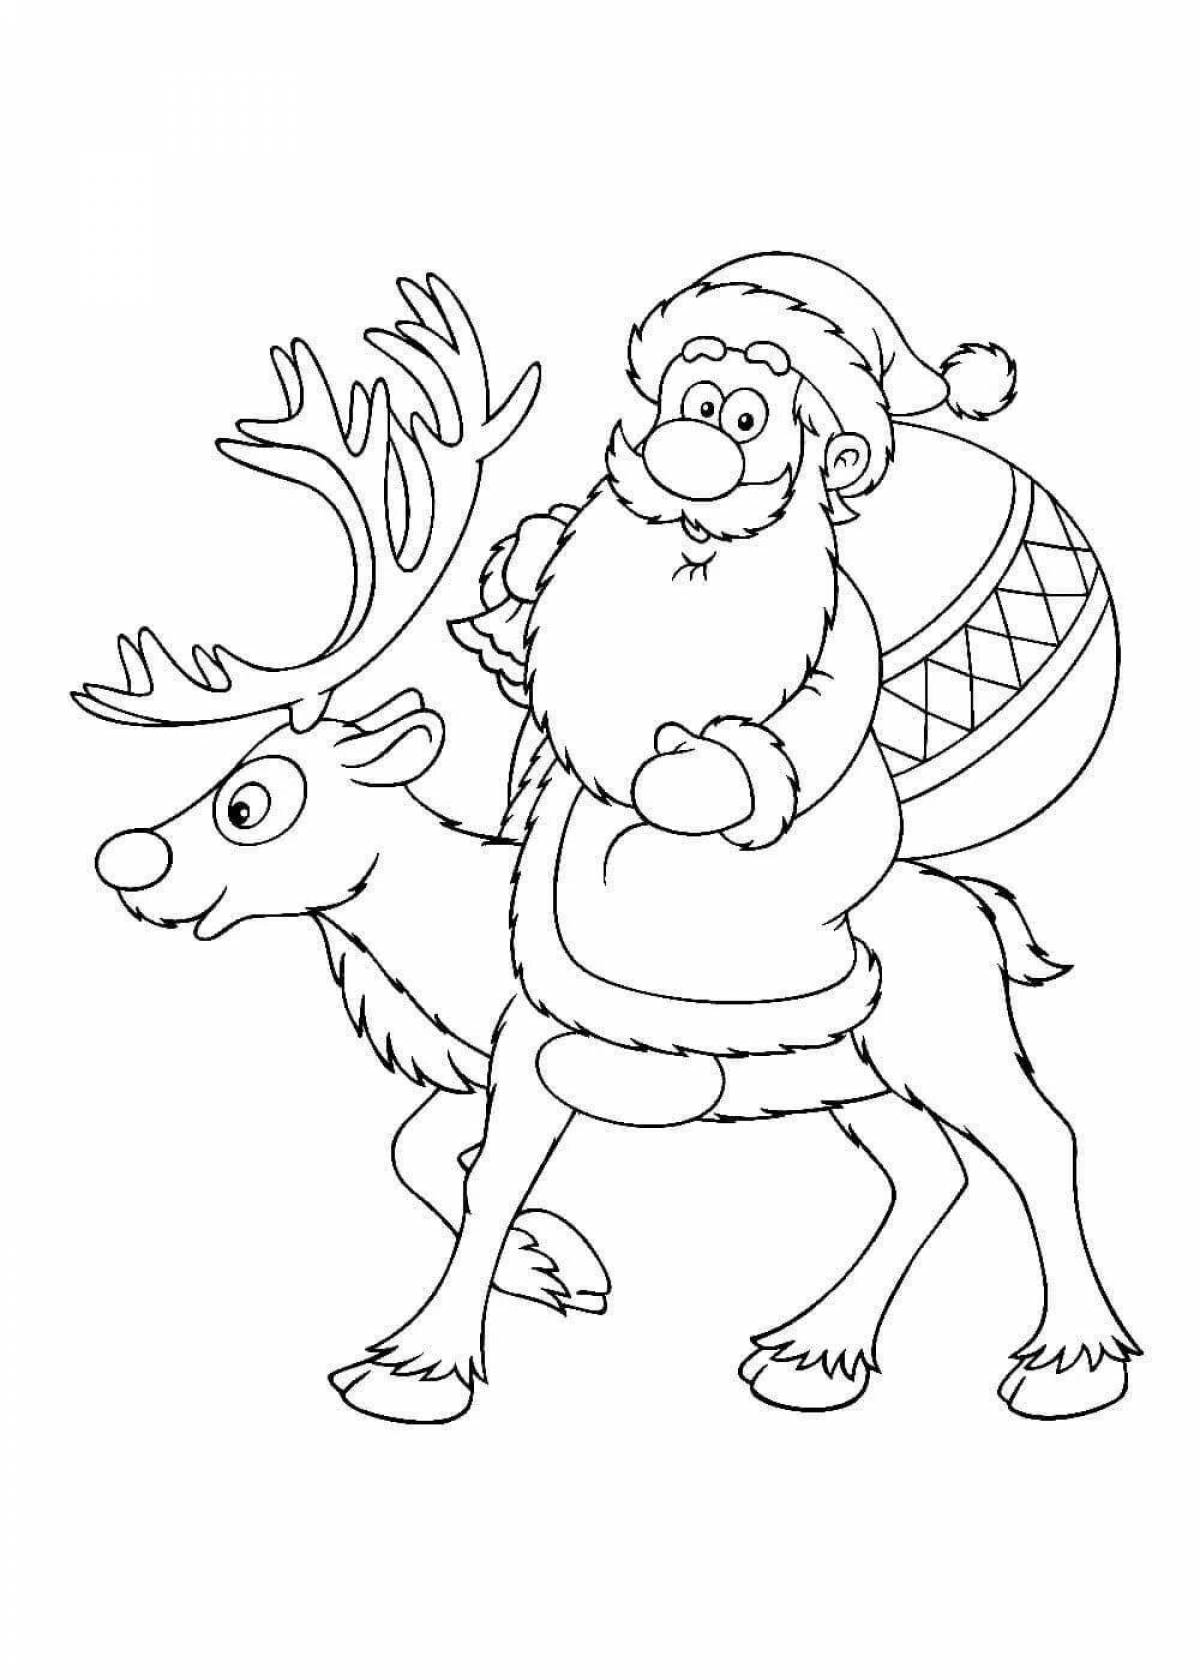 Раскраски Санта Клаус распечатать или скачать бесплатно в формате PDF